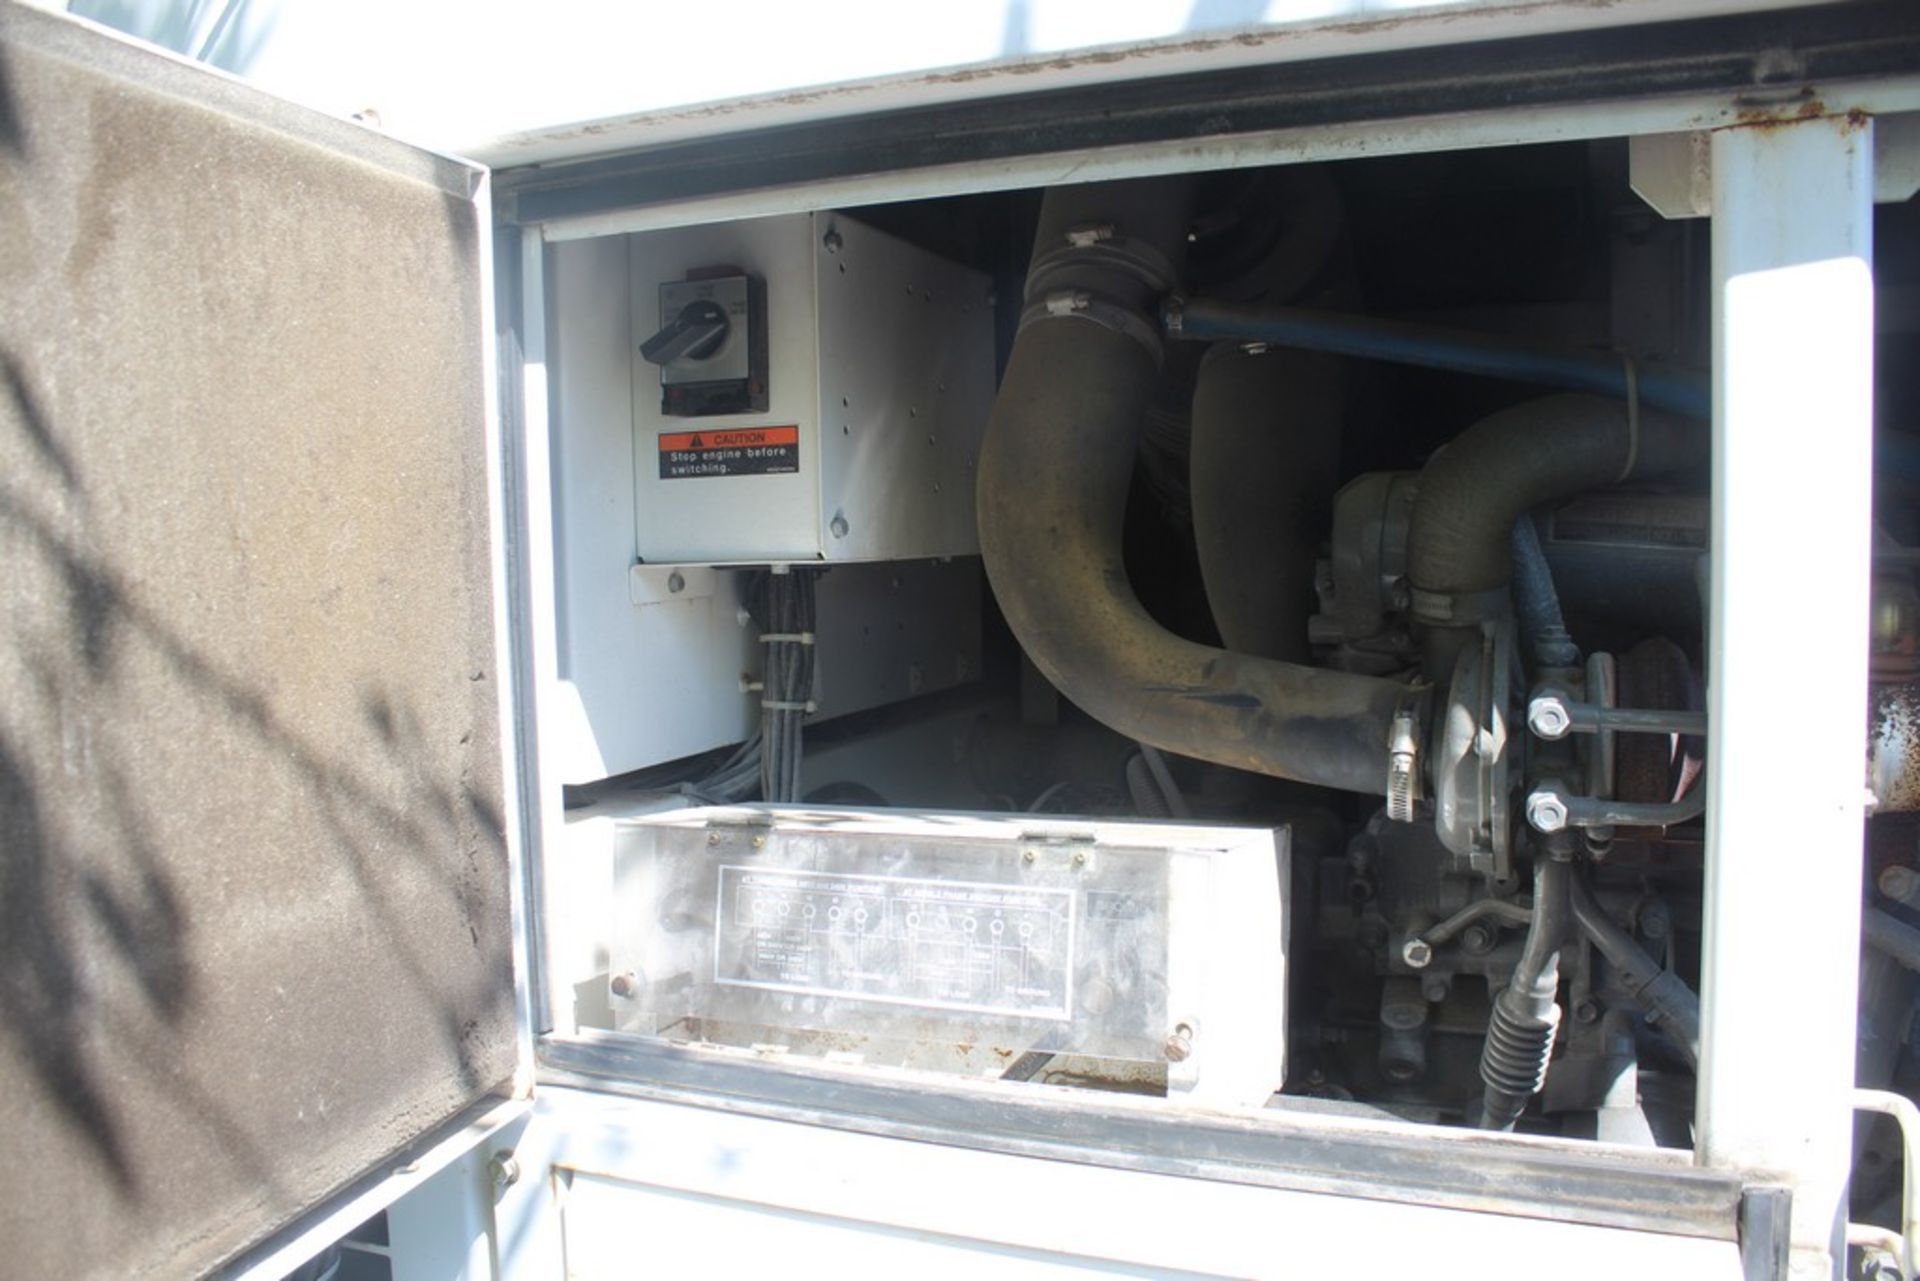 Whisperwatt 36 KW Model DCA-70SS1U2 Towable Generator, s/n 8202331, Isuzu 4 Cylinder Diesel - Image 6 of 8